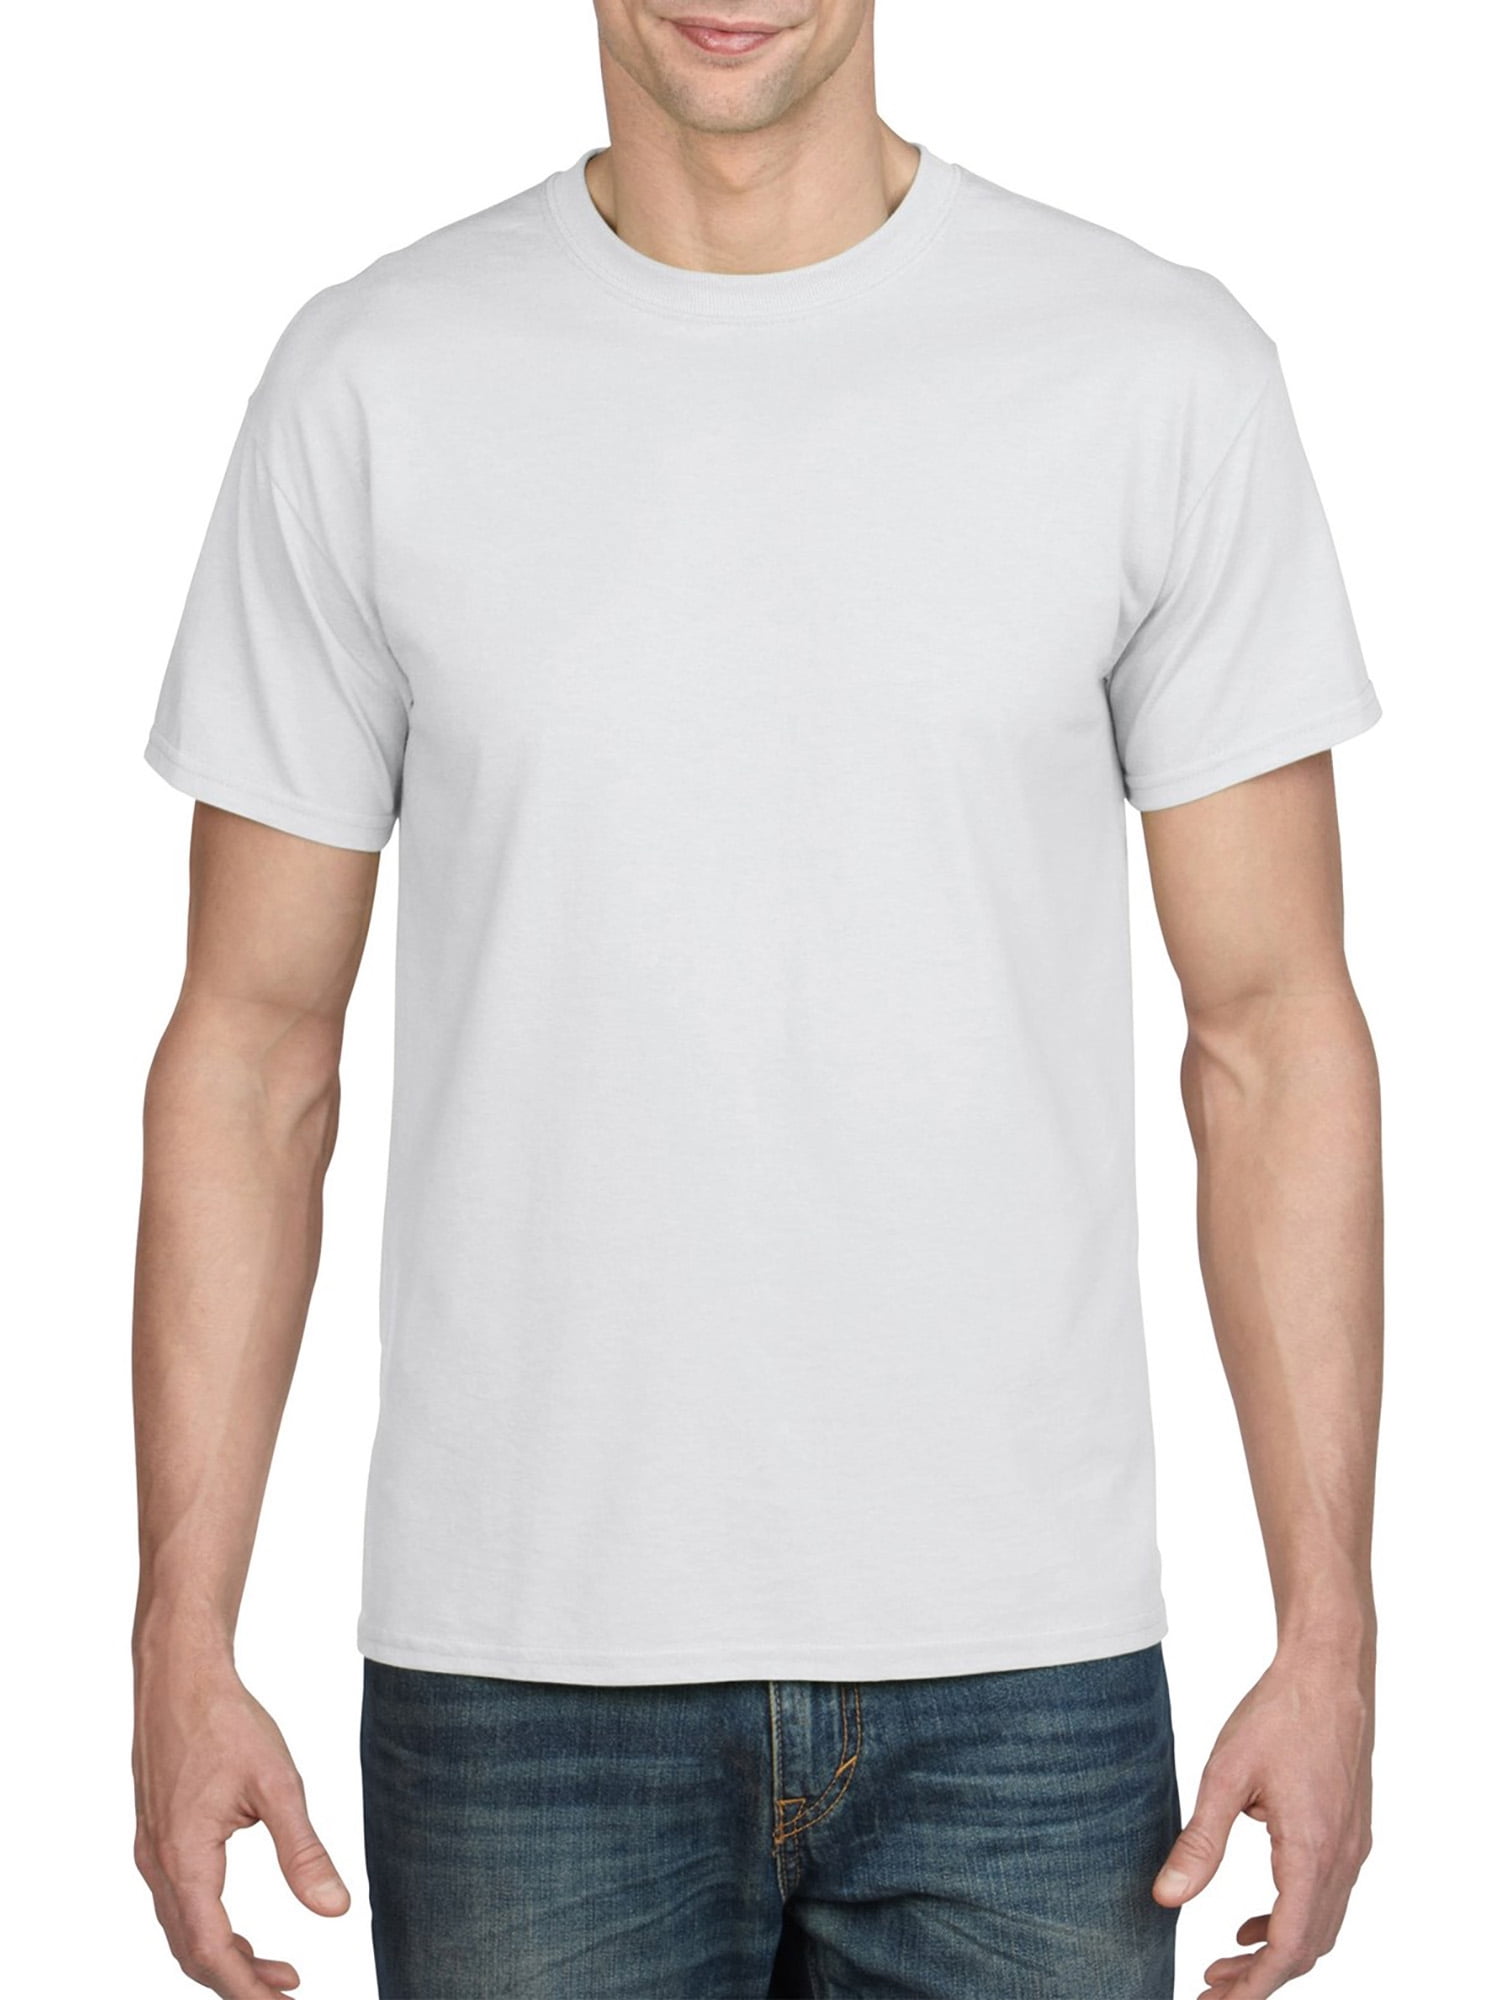 Montana Gildan Short Sleeve T-shirt